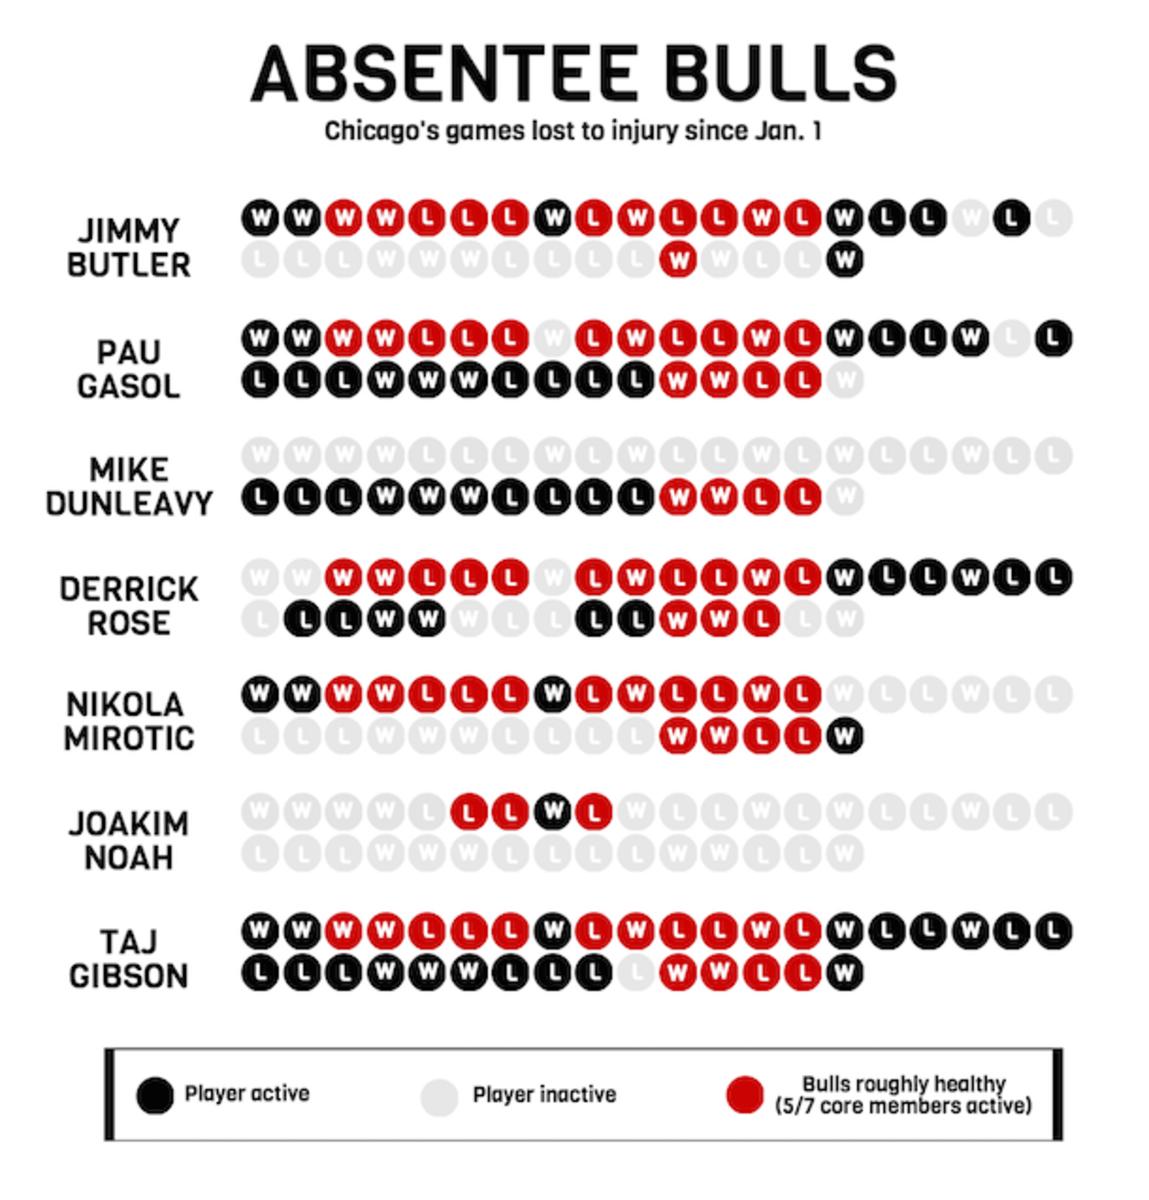 Bulls chart